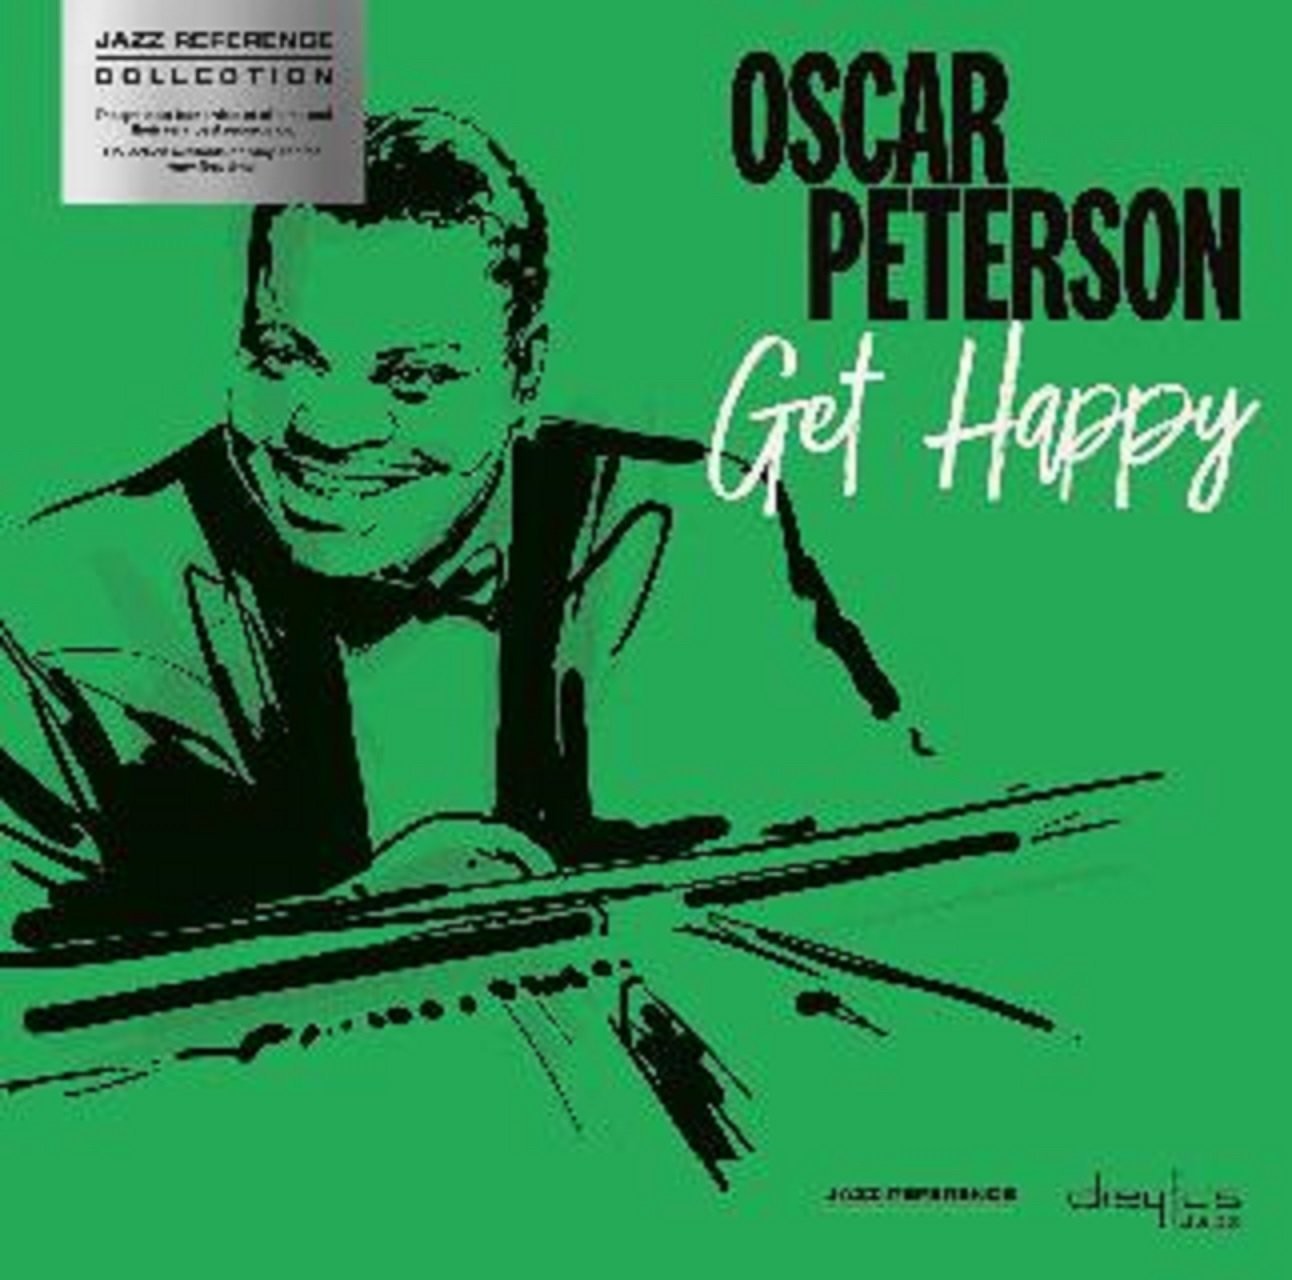 Peterson,Oscar - Get Happy